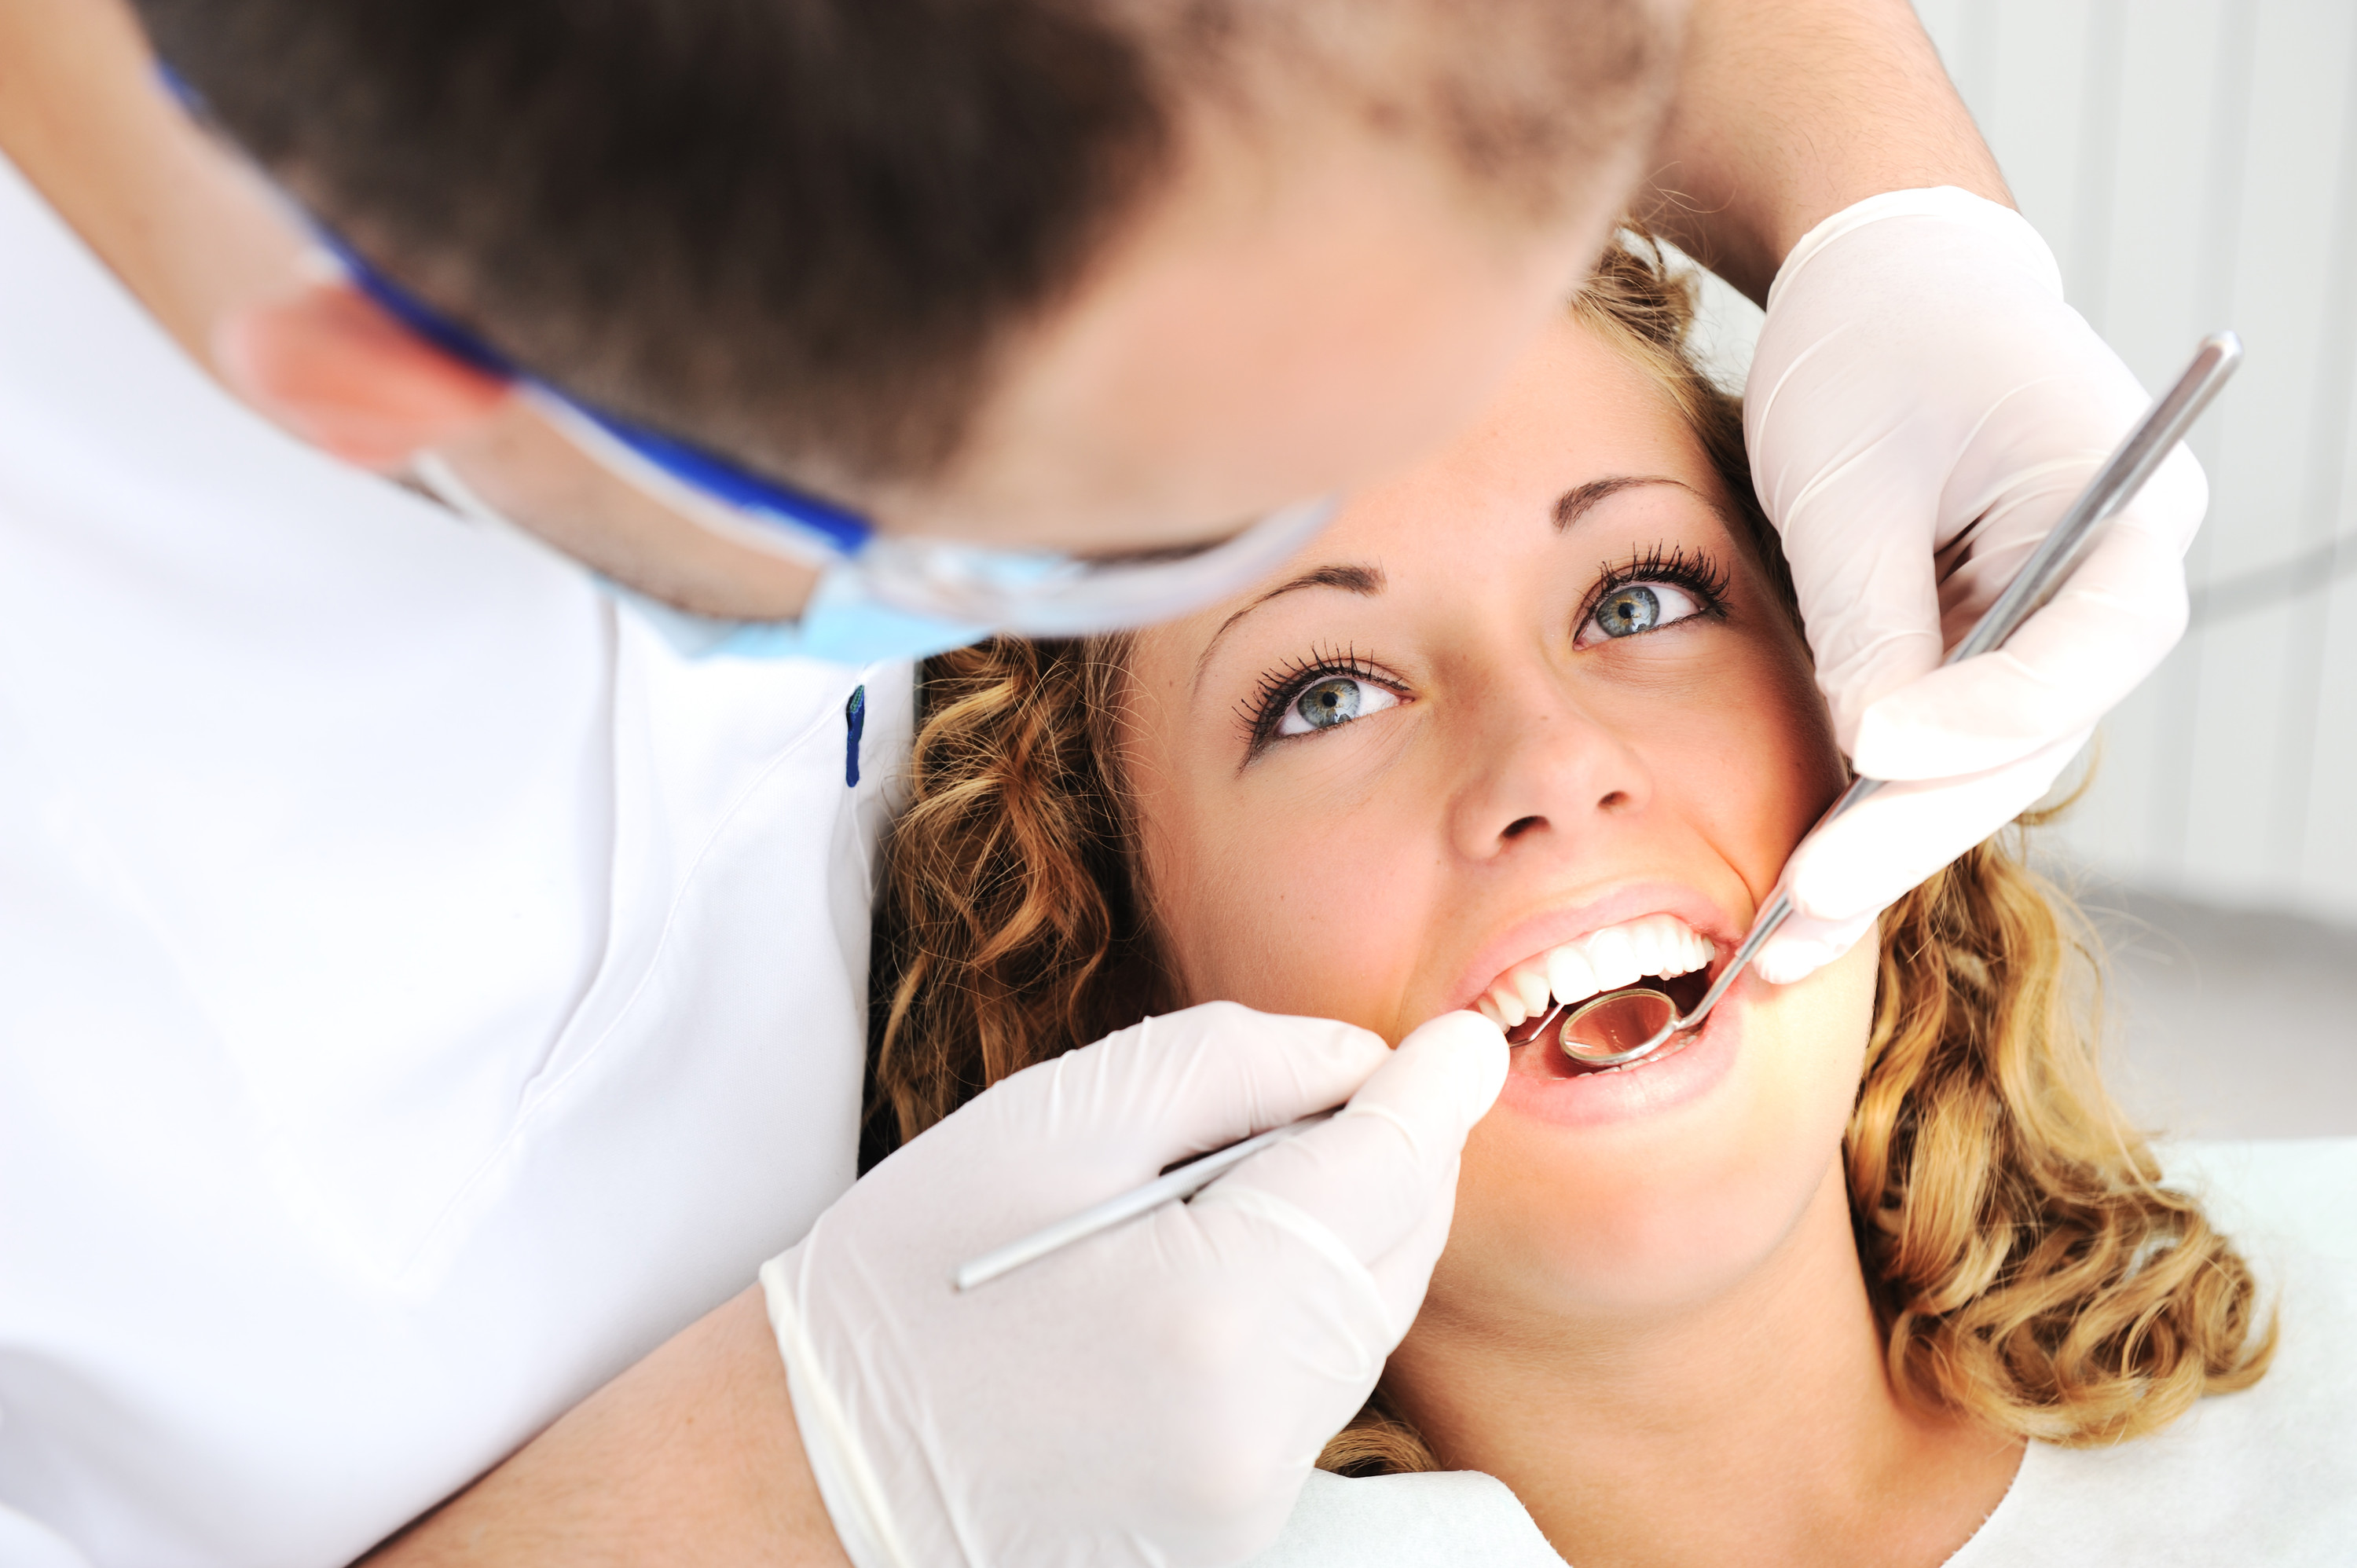 Επικίνδυνη η εκτέλεση οδοντιατρικών πράξεων από μη οδοντιάτρους